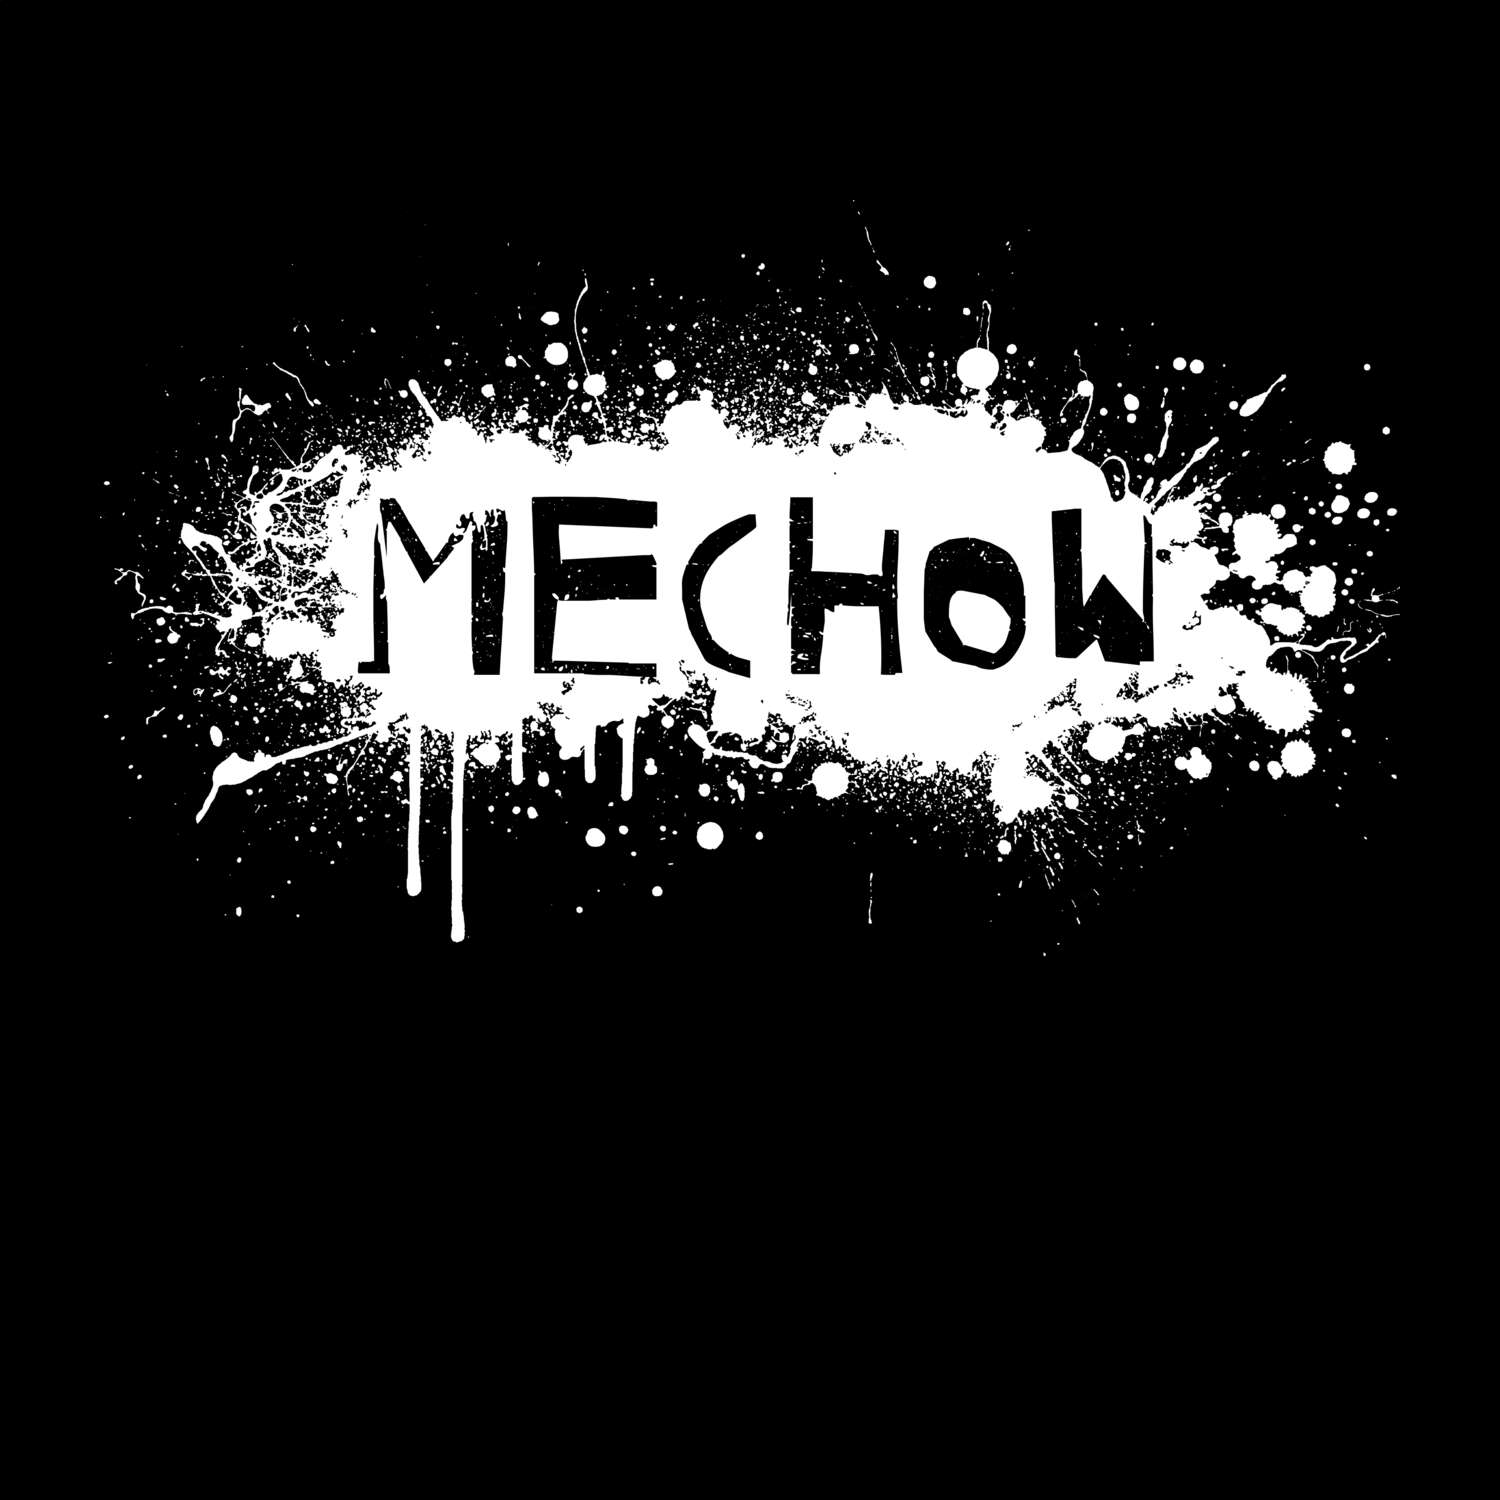 Mechow T-Shirt »Paint Splash Punk«